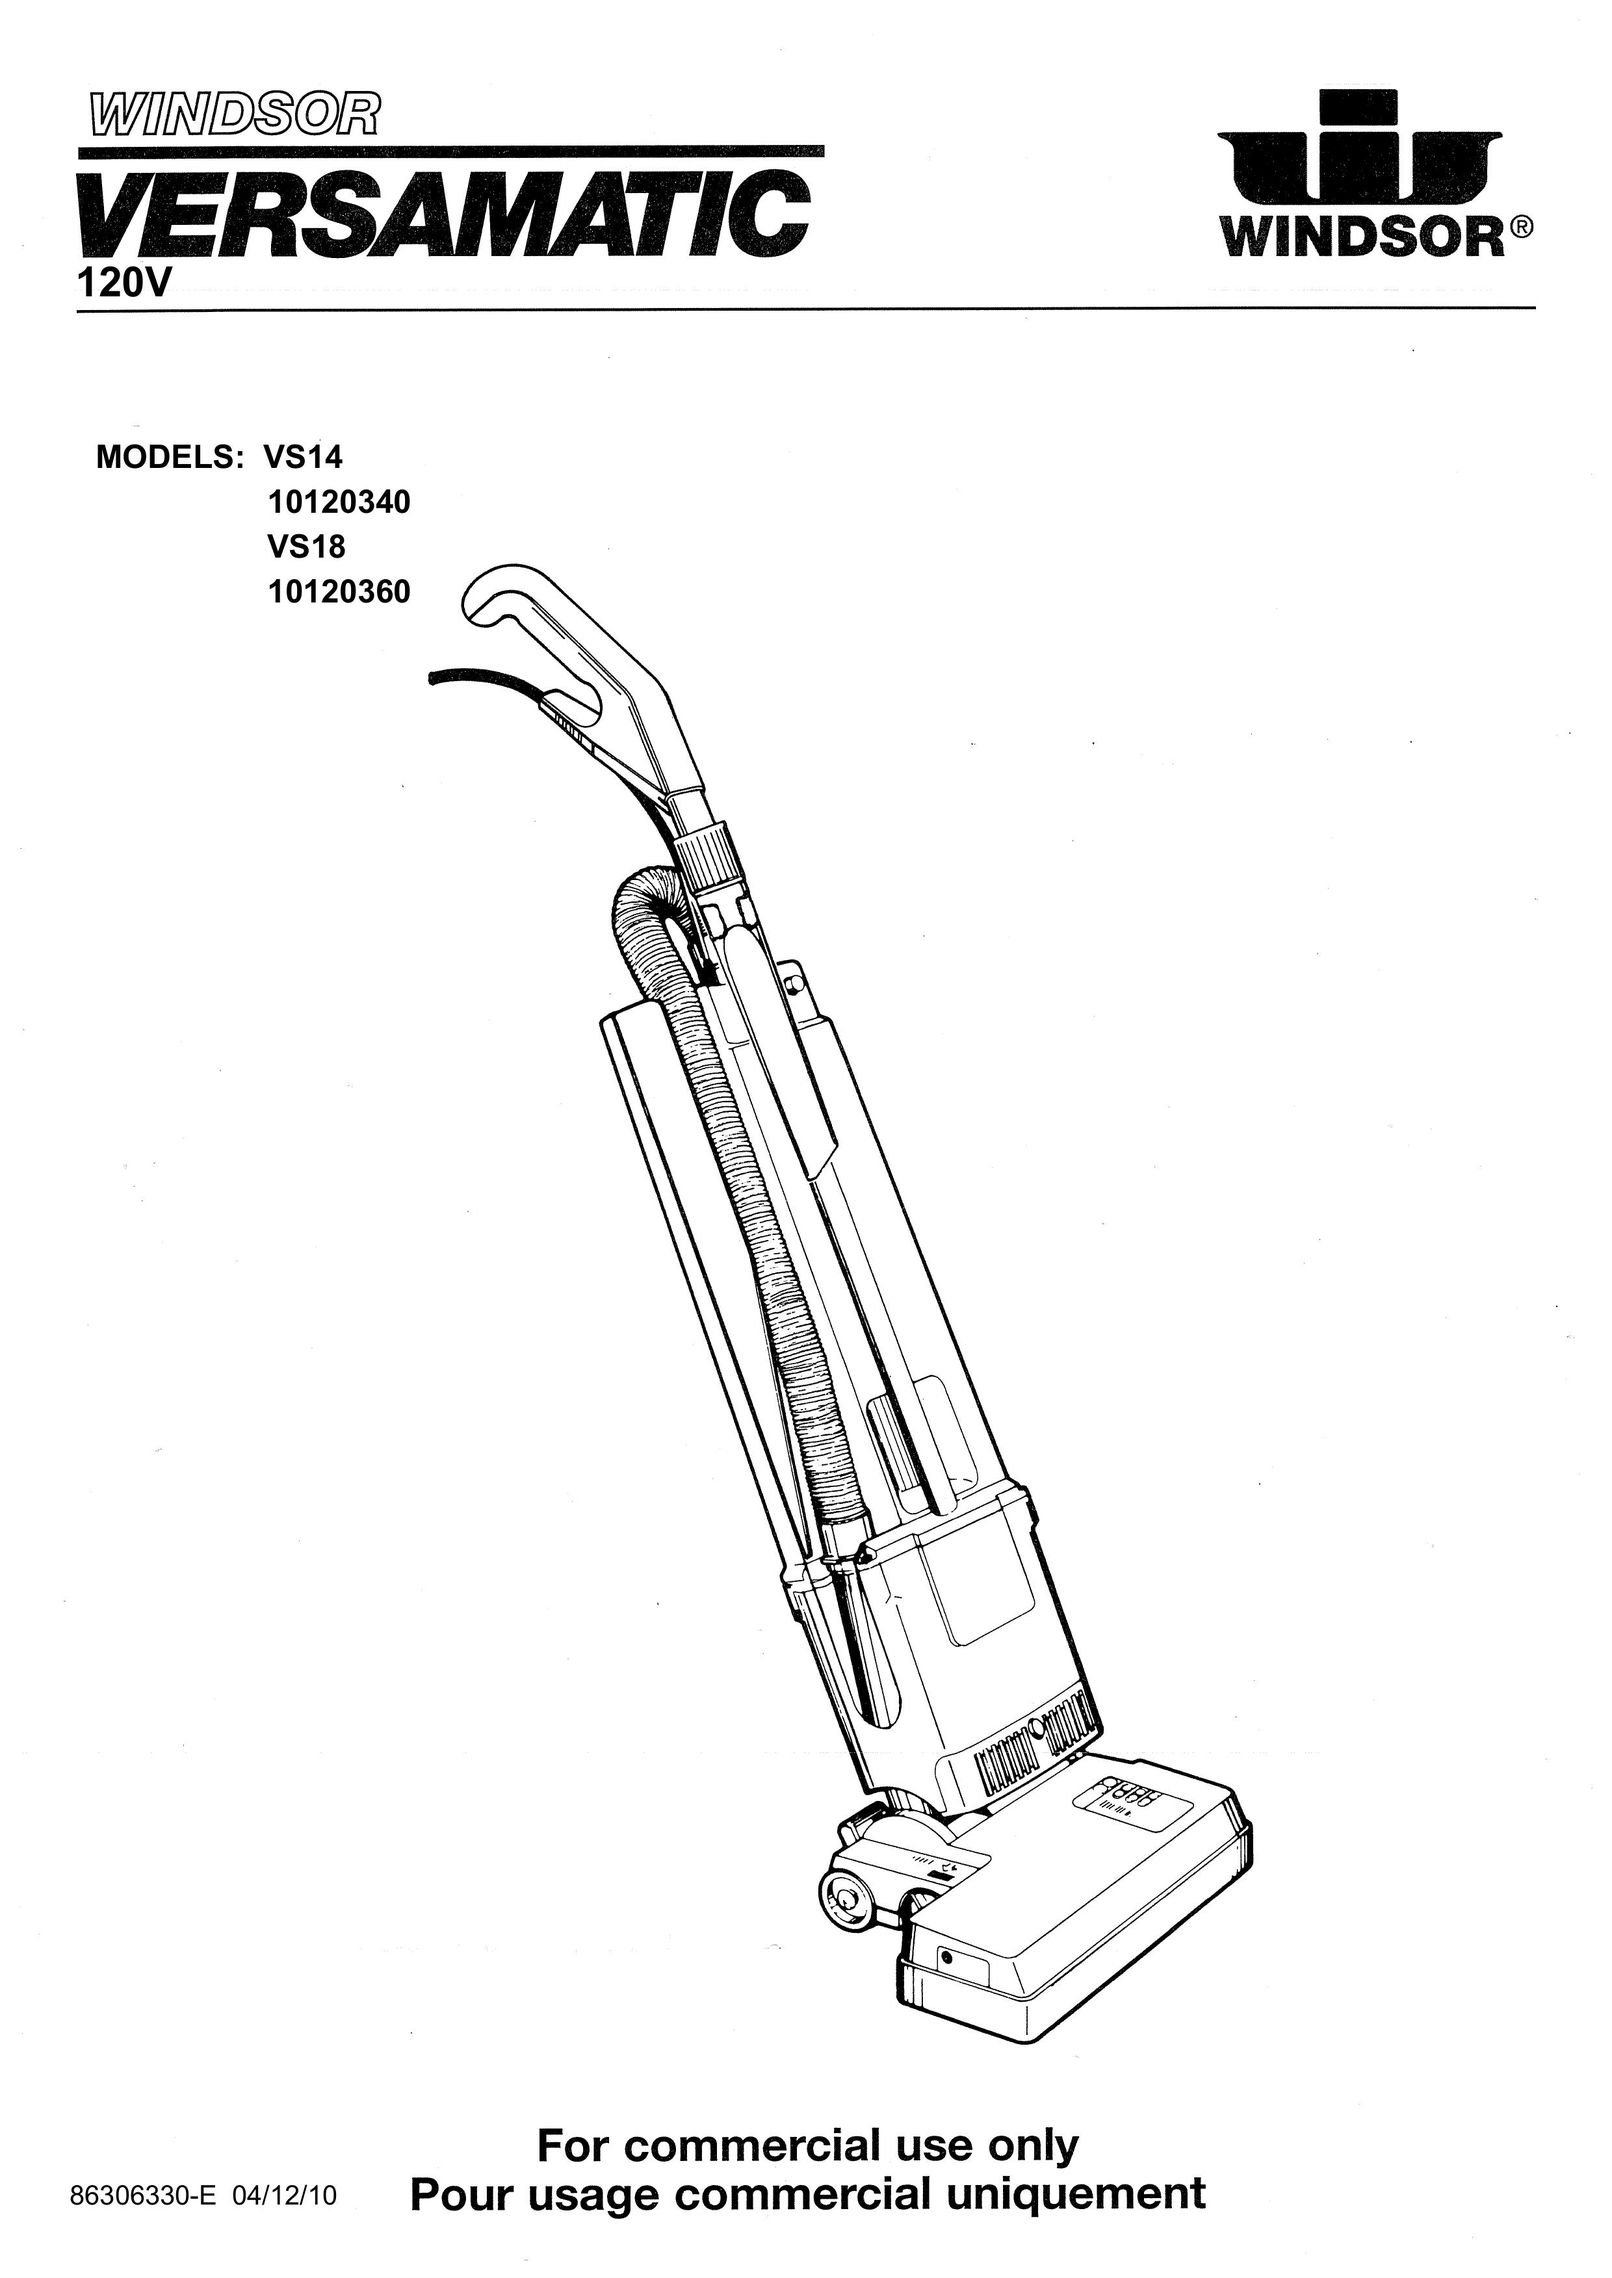 Windsor 10120360 Vacuum Cleaner User Manual